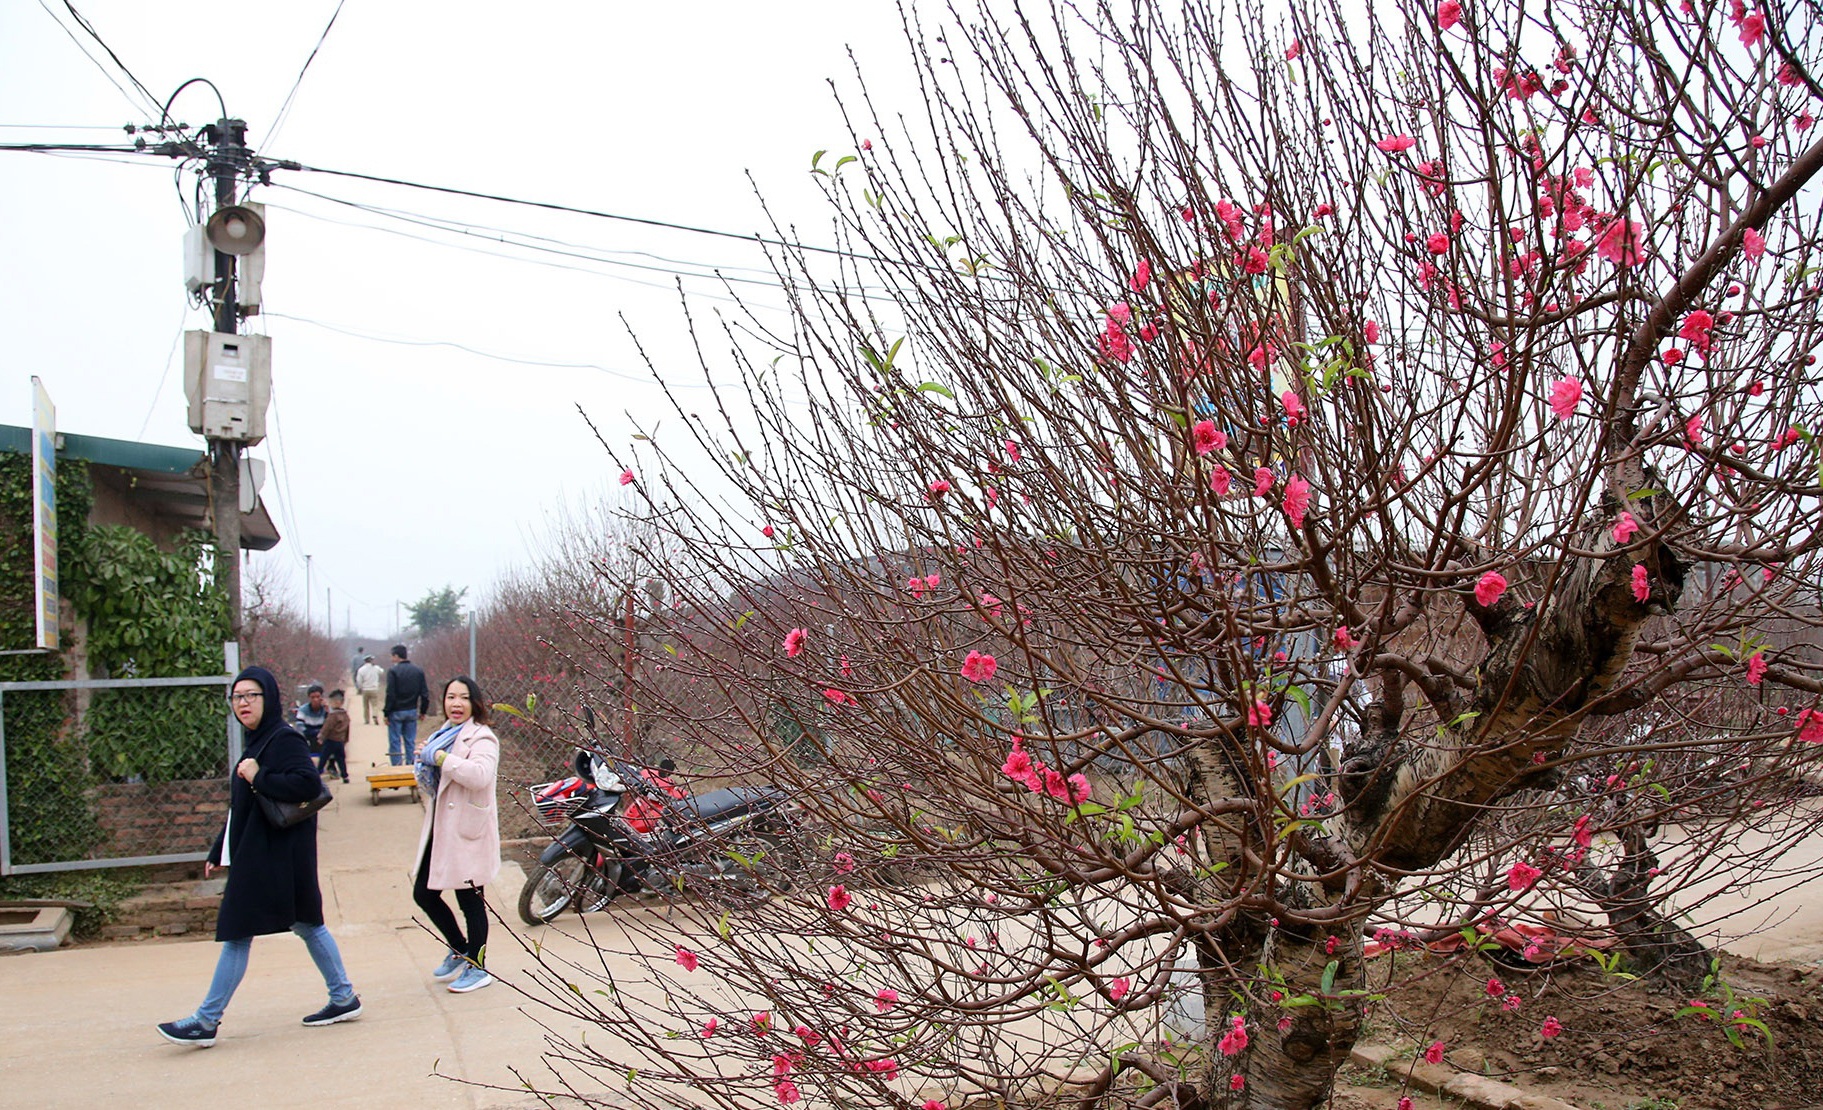 Hoa đào đỏ rực phủ kín cánh đồng Nhật Tân rộng bát ngát